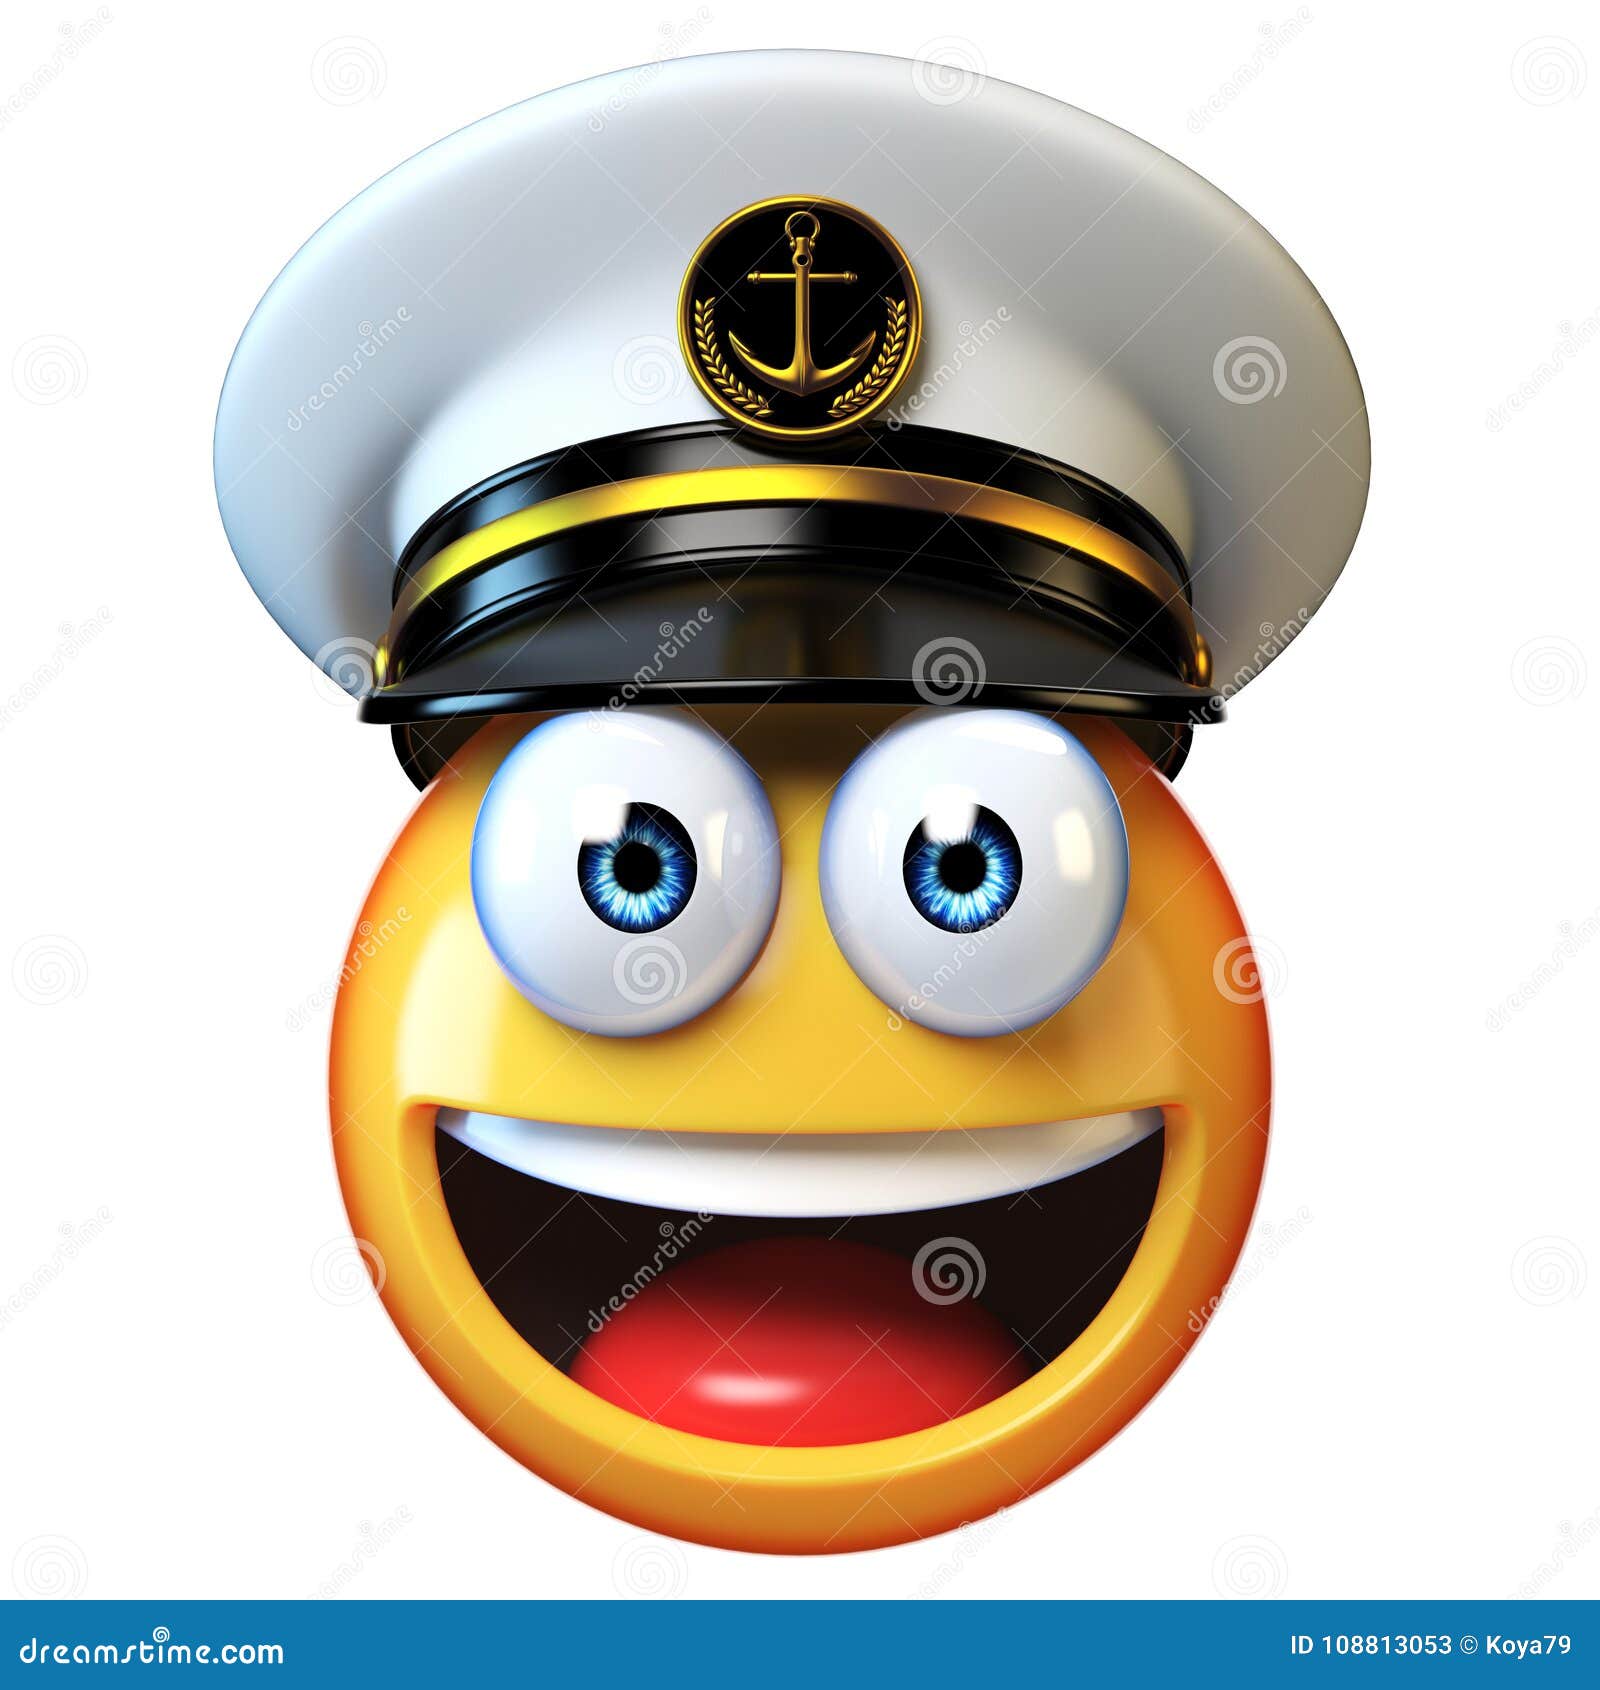 marines hat emoji  on white background, admiral emoticon wearing navy cap 3d rendering